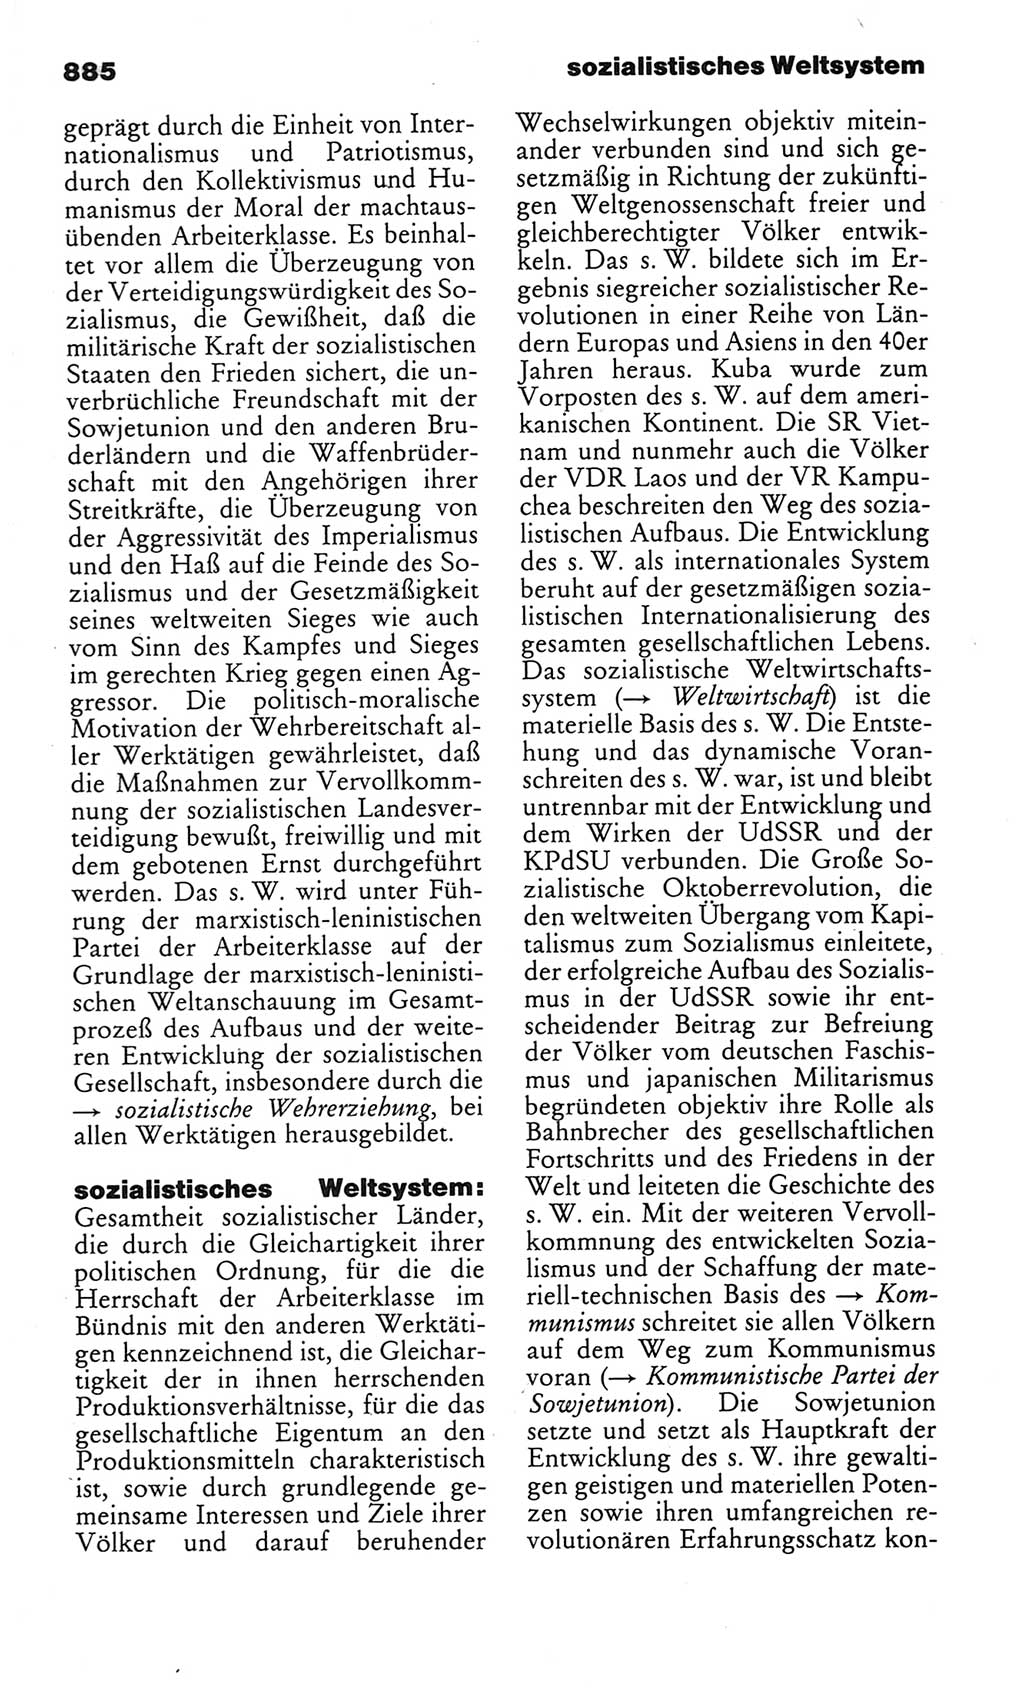 Kleines politisches Wörterbuch [Deutsche Demokratische Republik (DDR)] 1986, Seite 885 (Kl. pol. Wb. DDR 1986, S. 885)